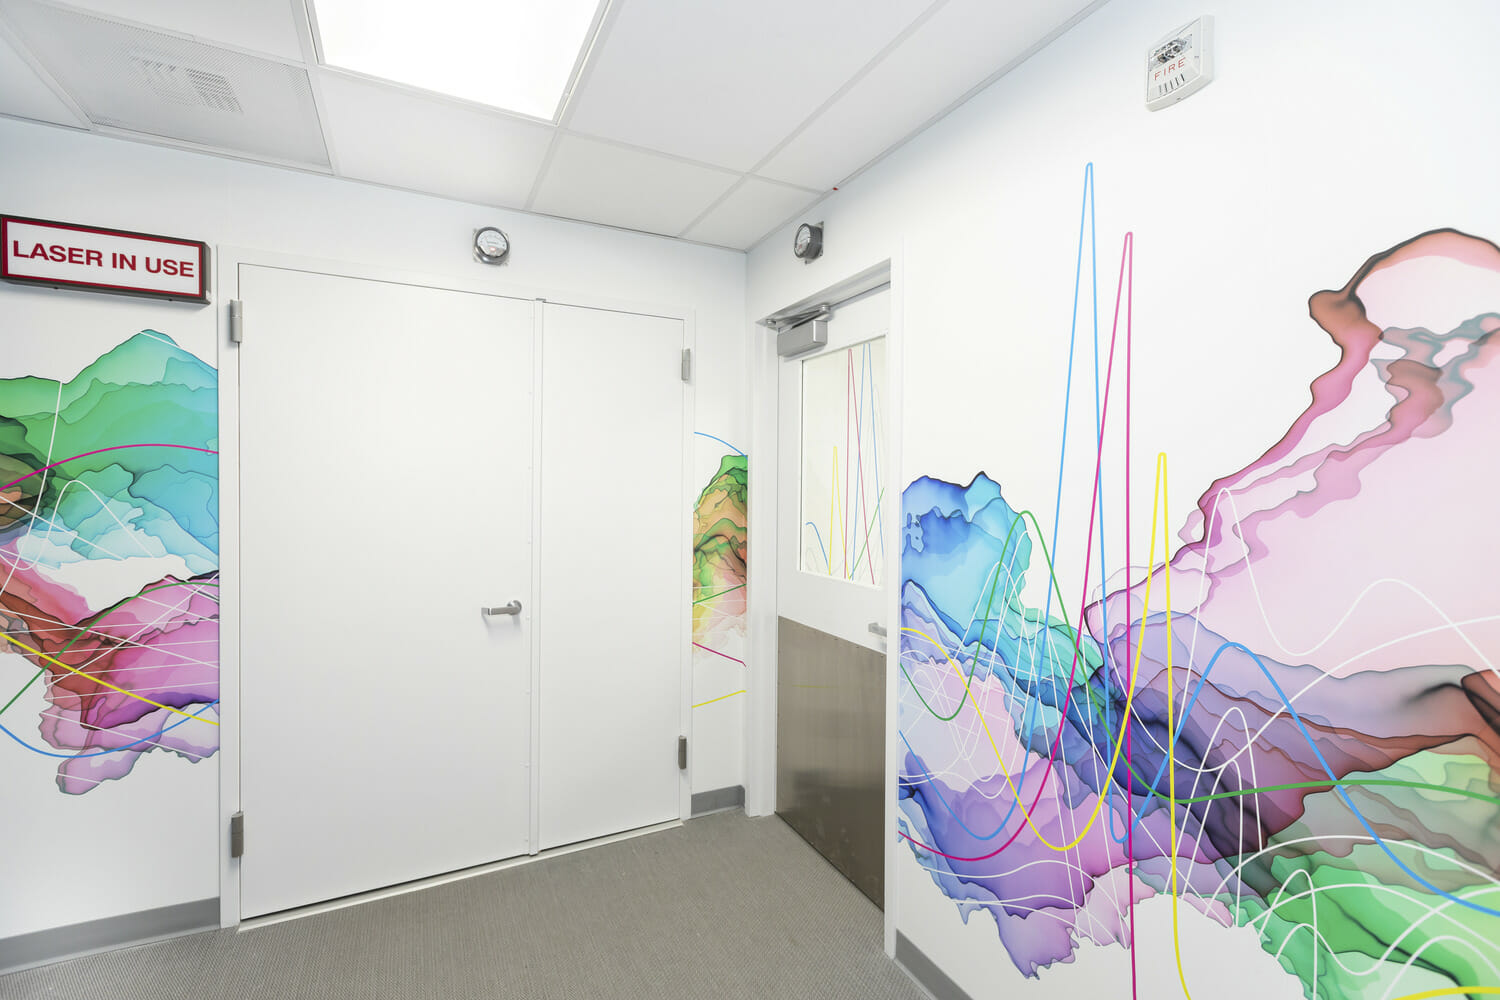 Un couloir avec une fresque colorée au mur.